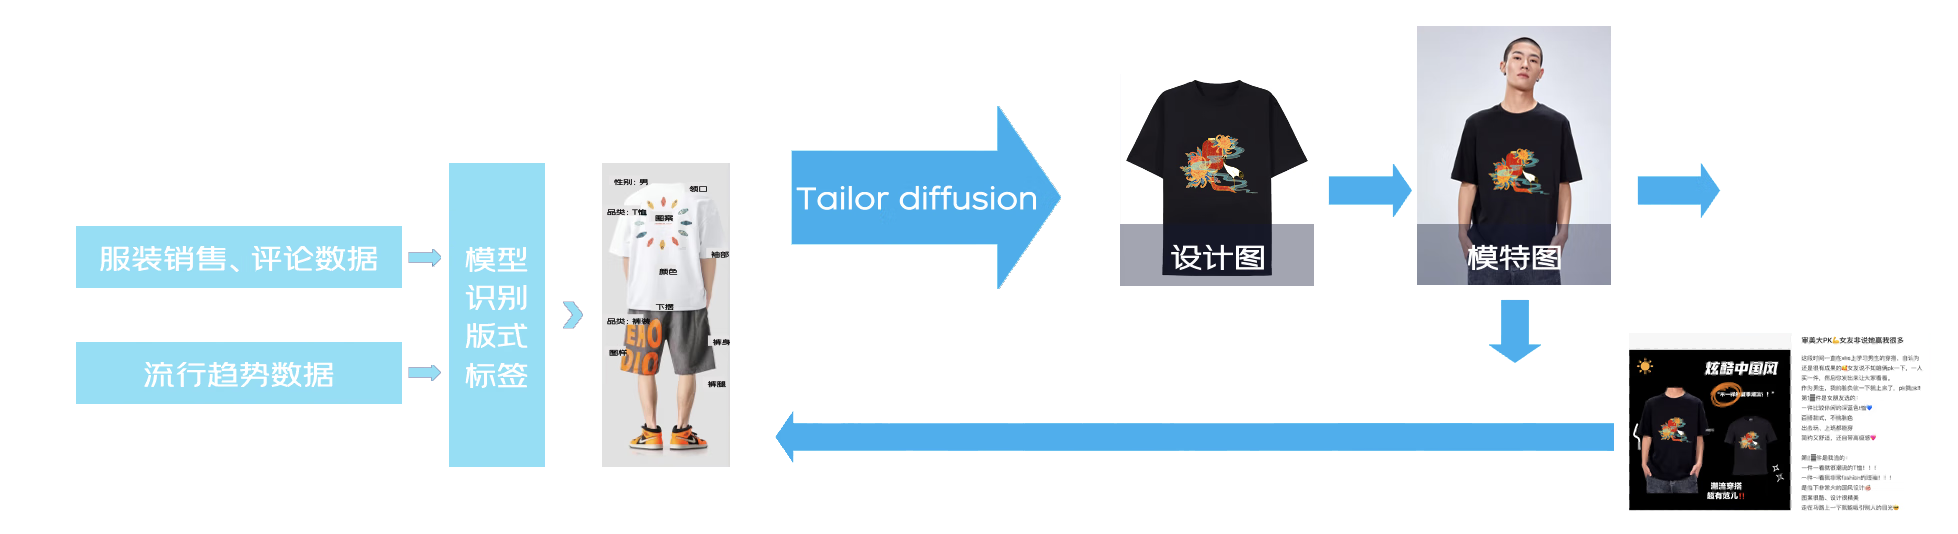 服装行业多模态算法个性化产品定制方案 | 京东云技术团队